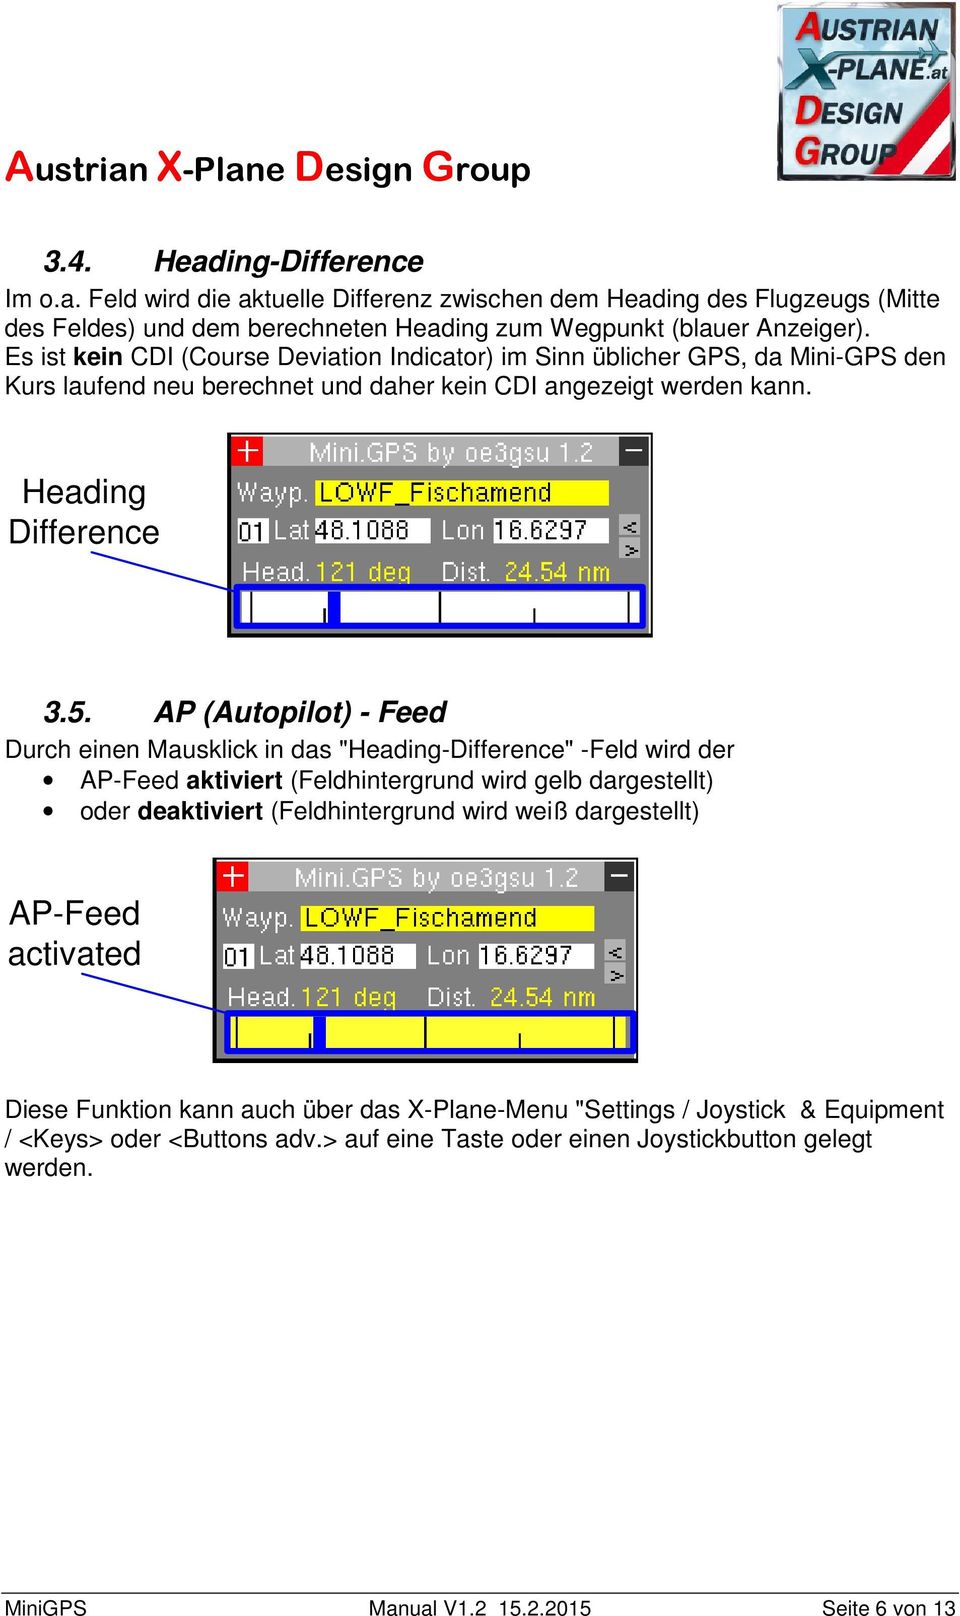 AP (Autopilot) - Feed Durch einen Mausklick in das "Heading-Difference" -Feld wird der AP-Feed aktiviert (Feldhintergrund wird gelb dargestellt) oder deaktiviert (Feldhintergrund wird weiß